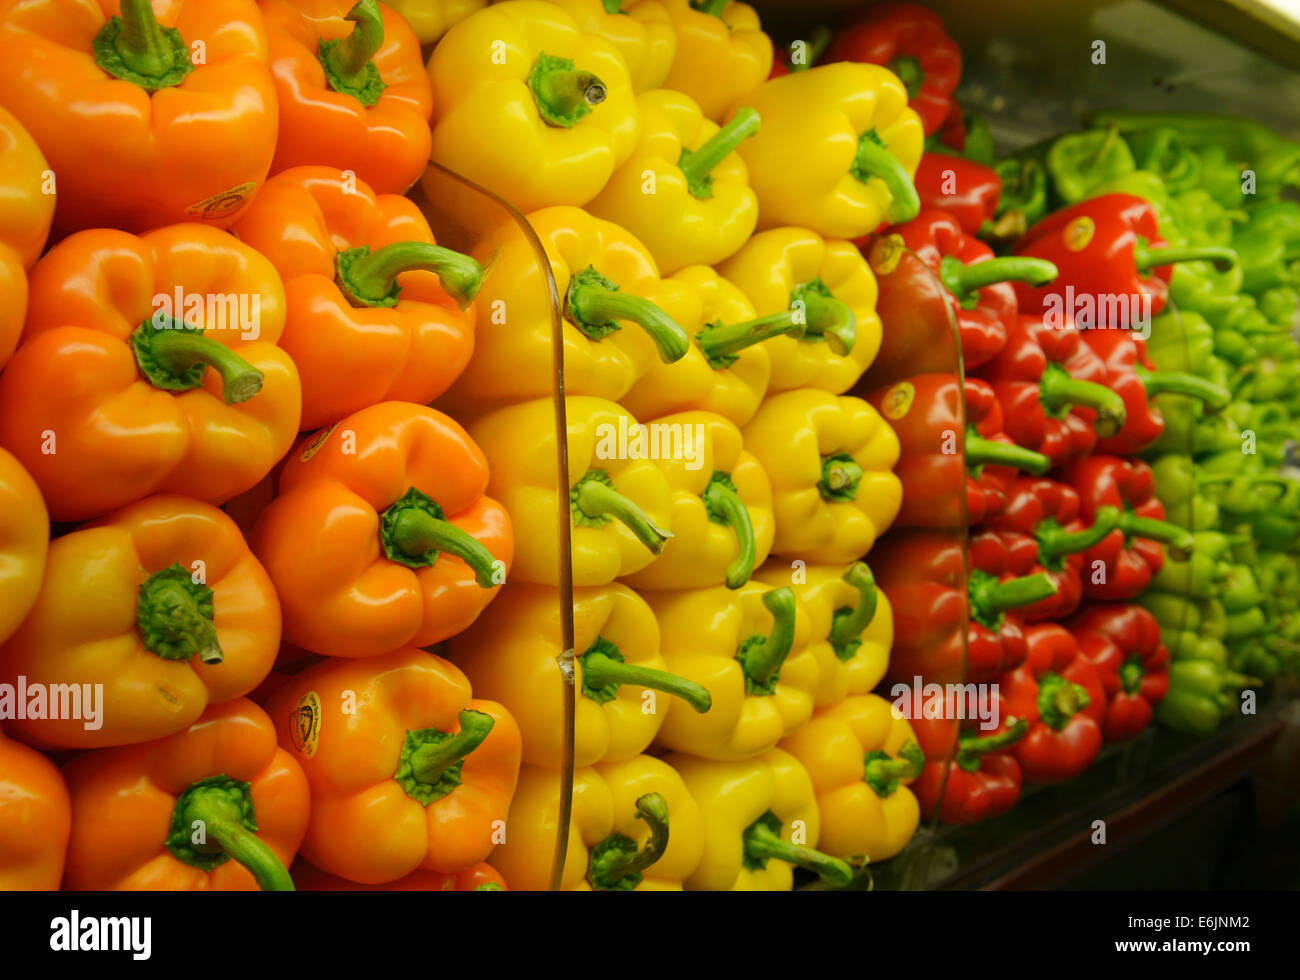 Gesunde Produkte in den Regalen einer Markt - Paprika Stockfoto